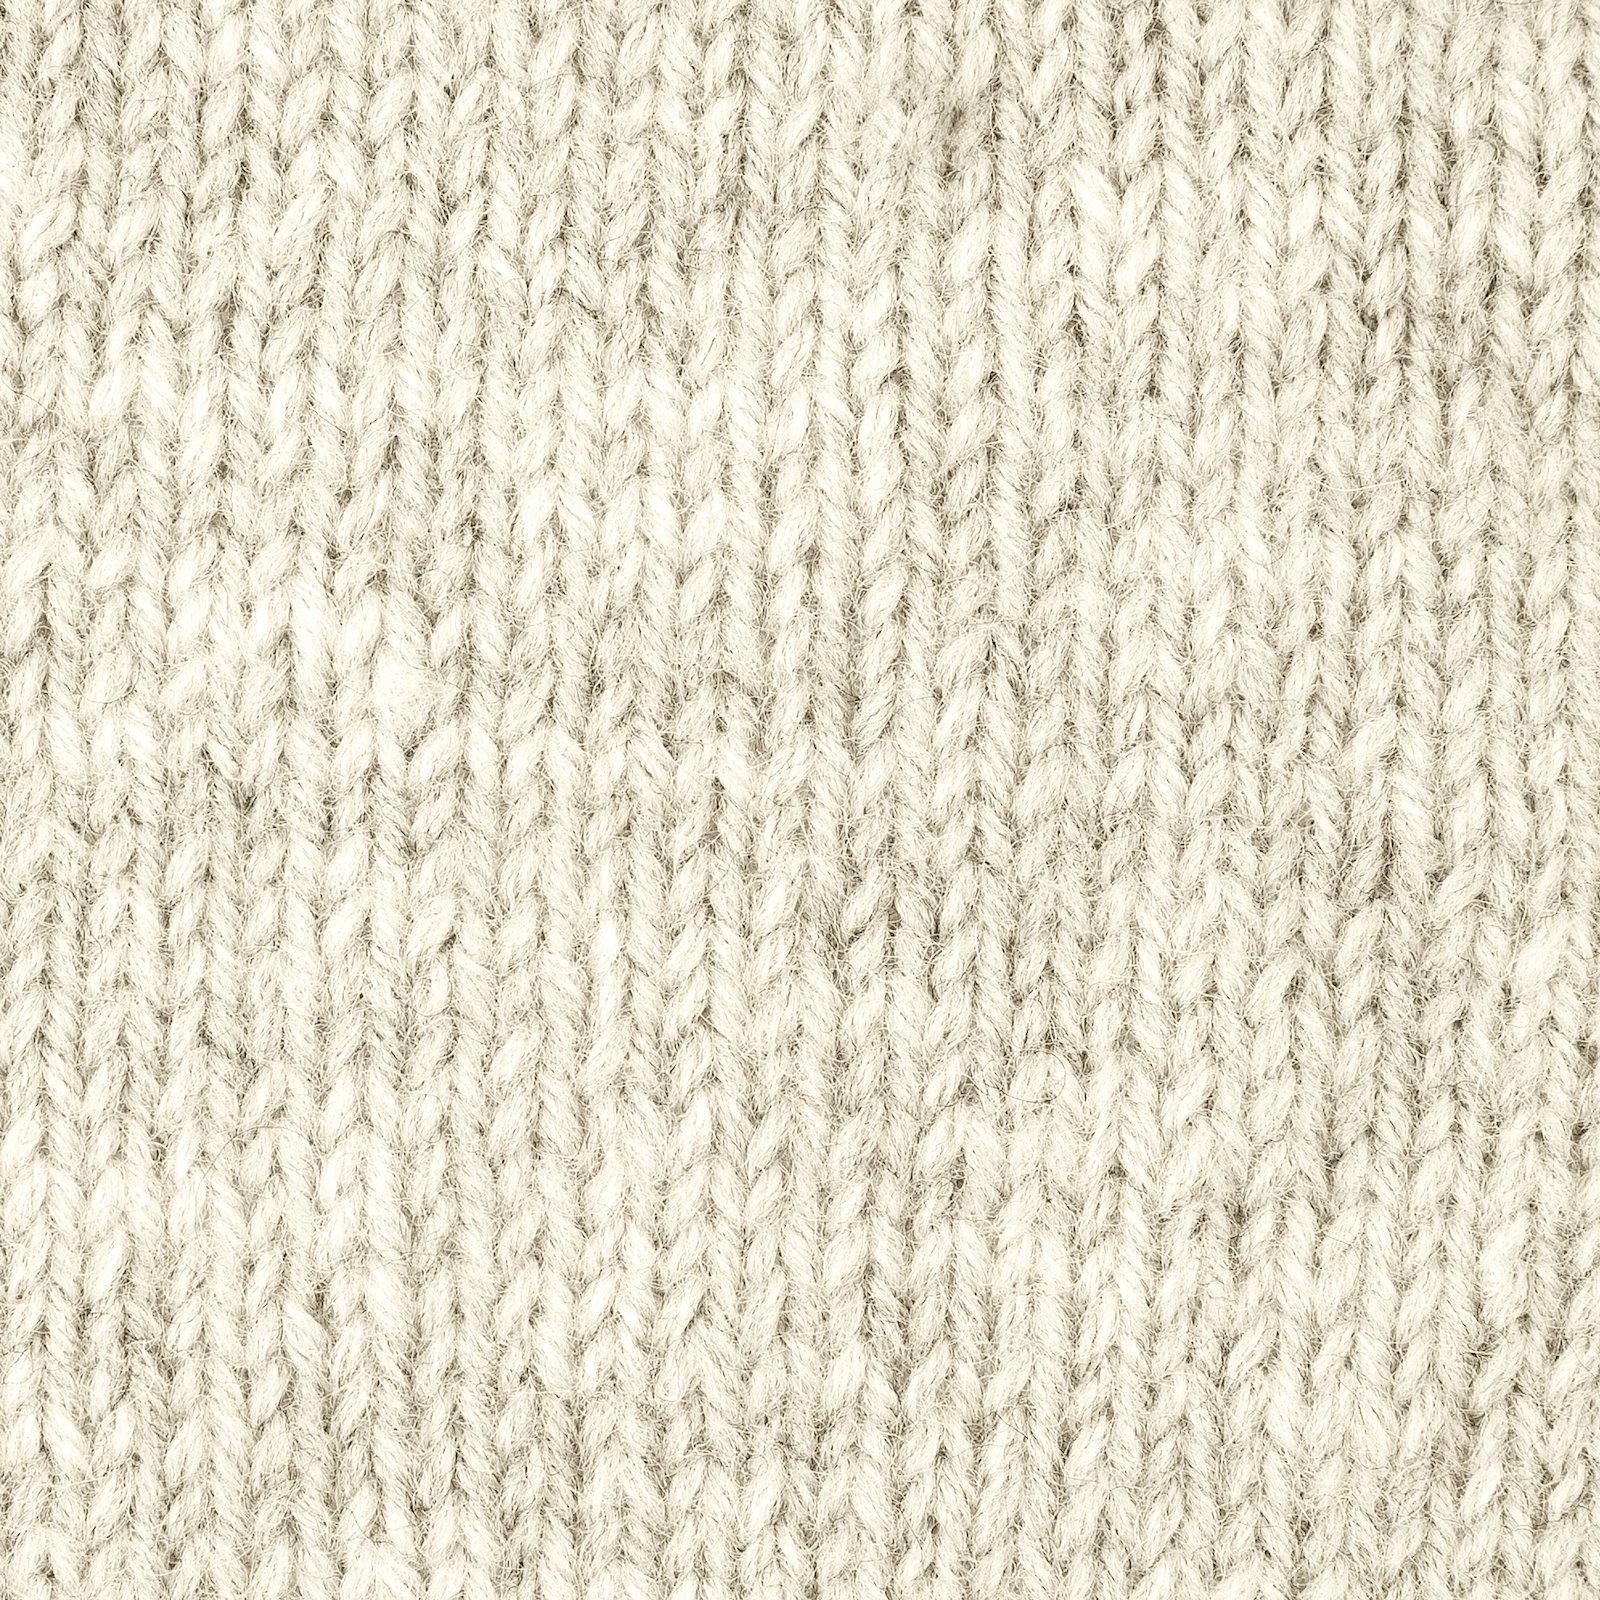 FRAYA, wool  yarn "Warm", nature 90051002_sskit